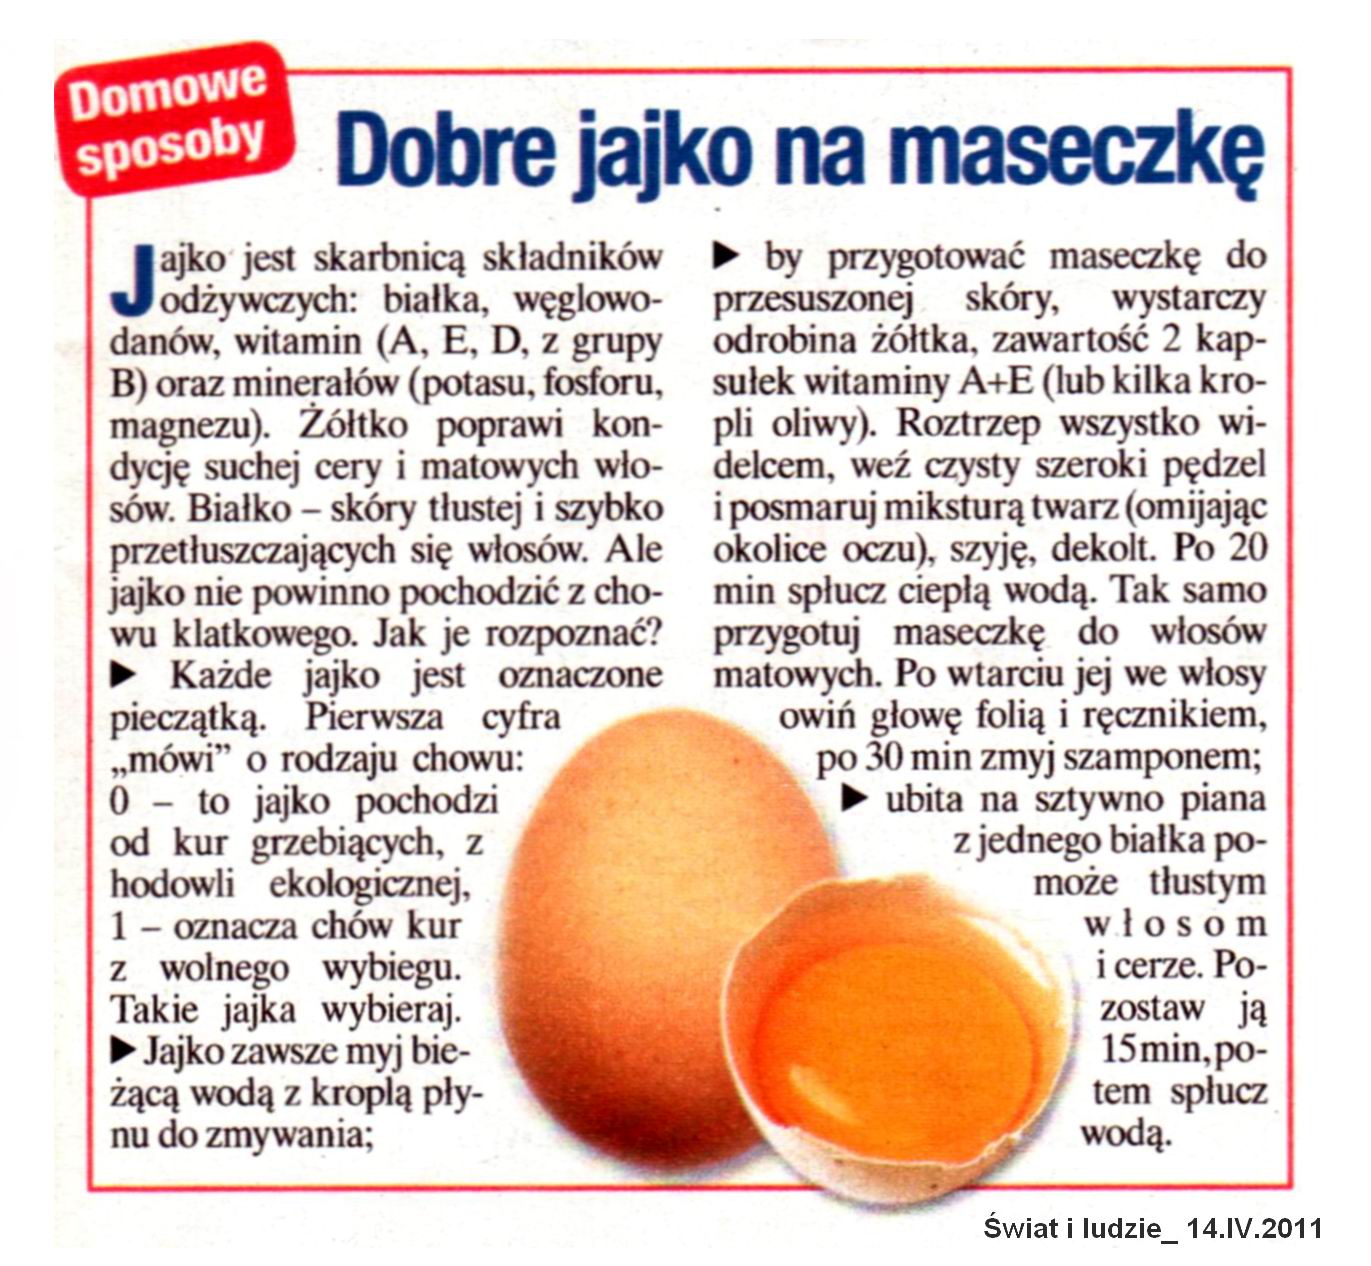  Produkty spożywcze - jajko_walory zdrowotne.jpg